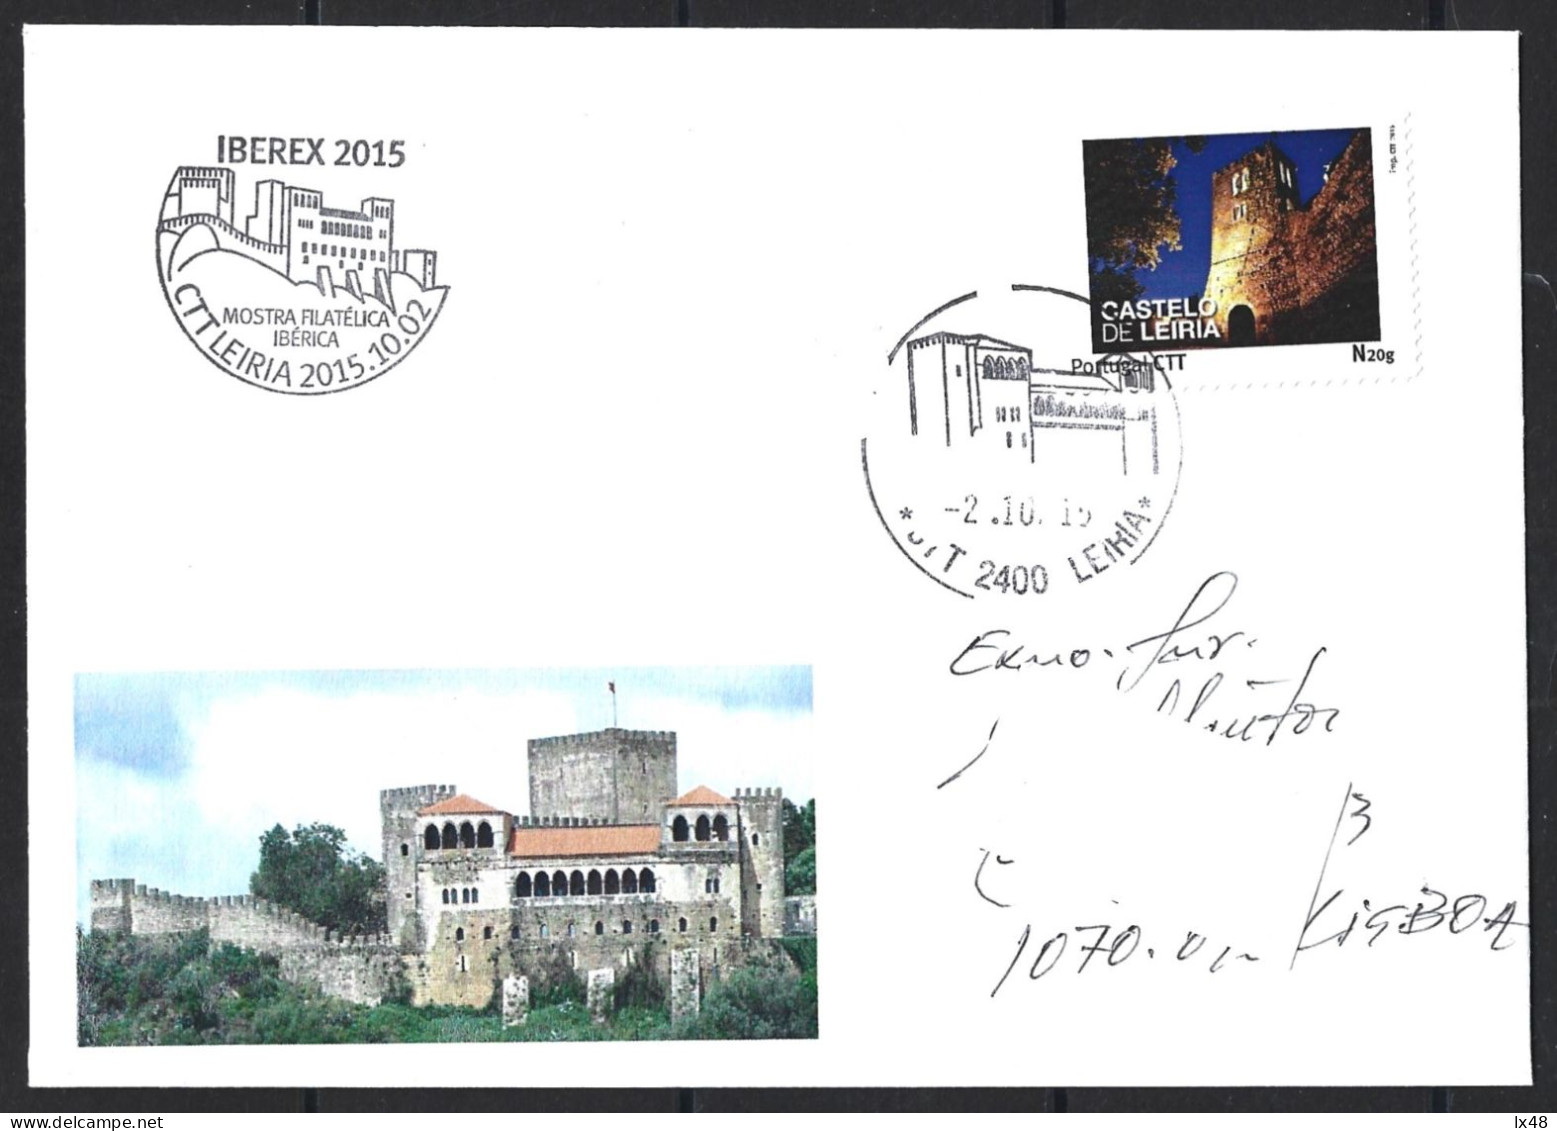 Castelo De Leiria. Envelope Circulado Com Stamp Personalizado E Obliteração Do Castelo De Leiria 2015. Leiria Castle. Ci - Briefe U. Dokumente